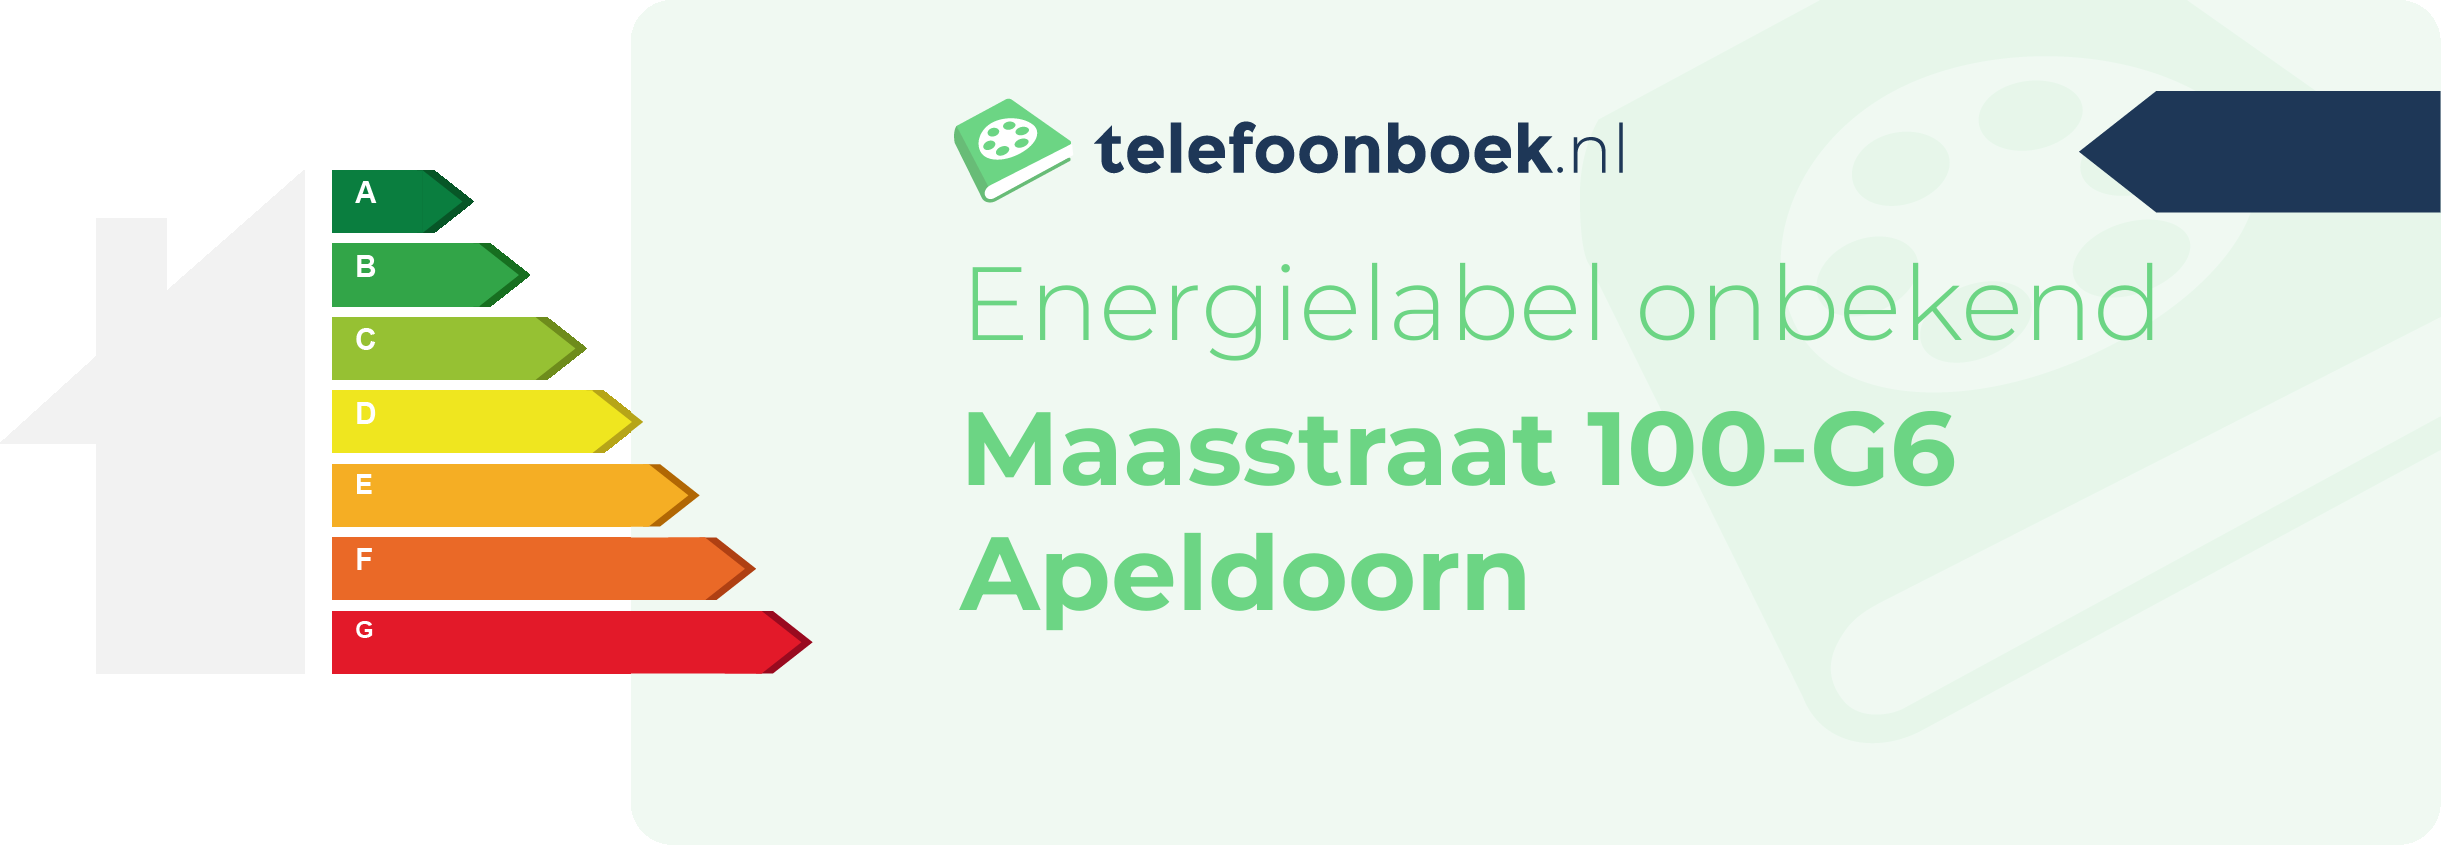 Energielabel Maasstraat 100-G6 Apeldoorn